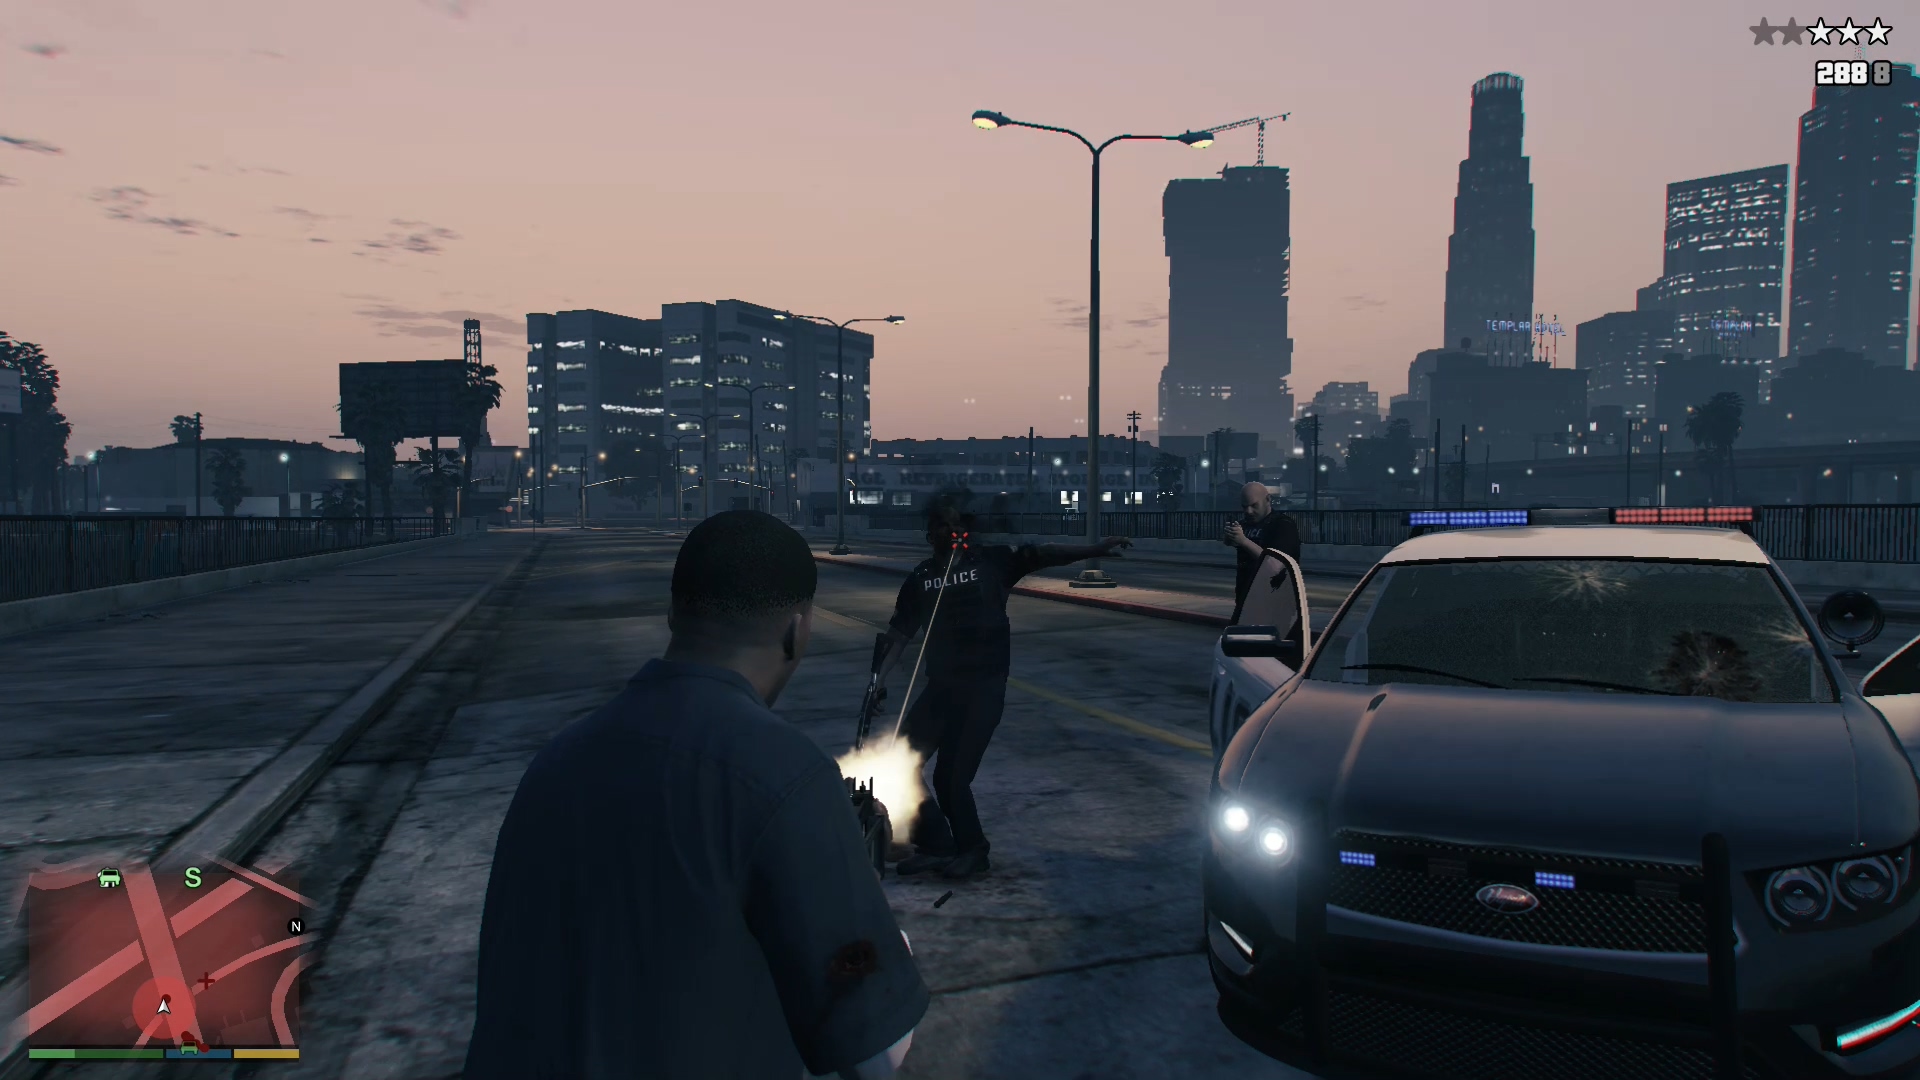 GTA 5 Premium Edition. Изменение игры. Запуска игры "Grand Theft auto 5" (сирена, стрельба). Игра про изменение истории. Игра гта 5 механики